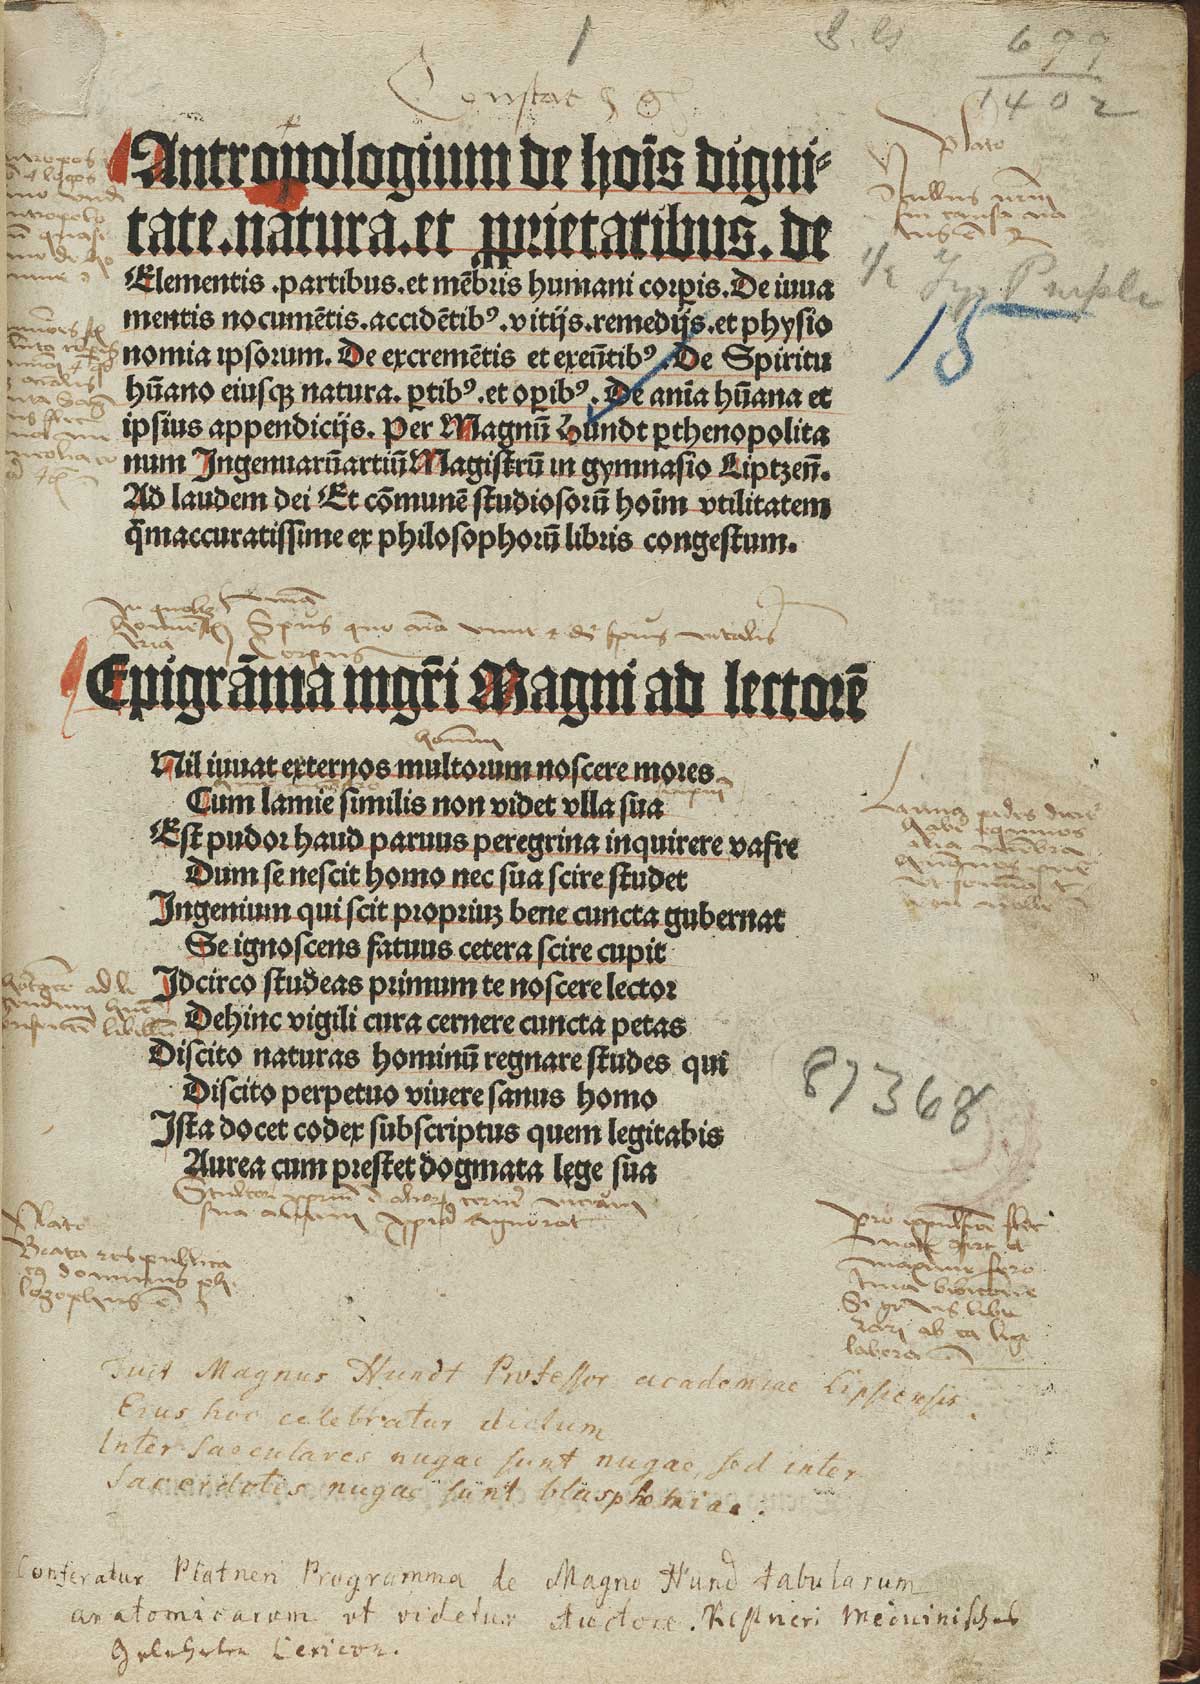 The titlepage of Magnus Hundt's Antropologium de hominis dignitate, natura et proprietatibus, de elementis, partibus et membris humani corporis.